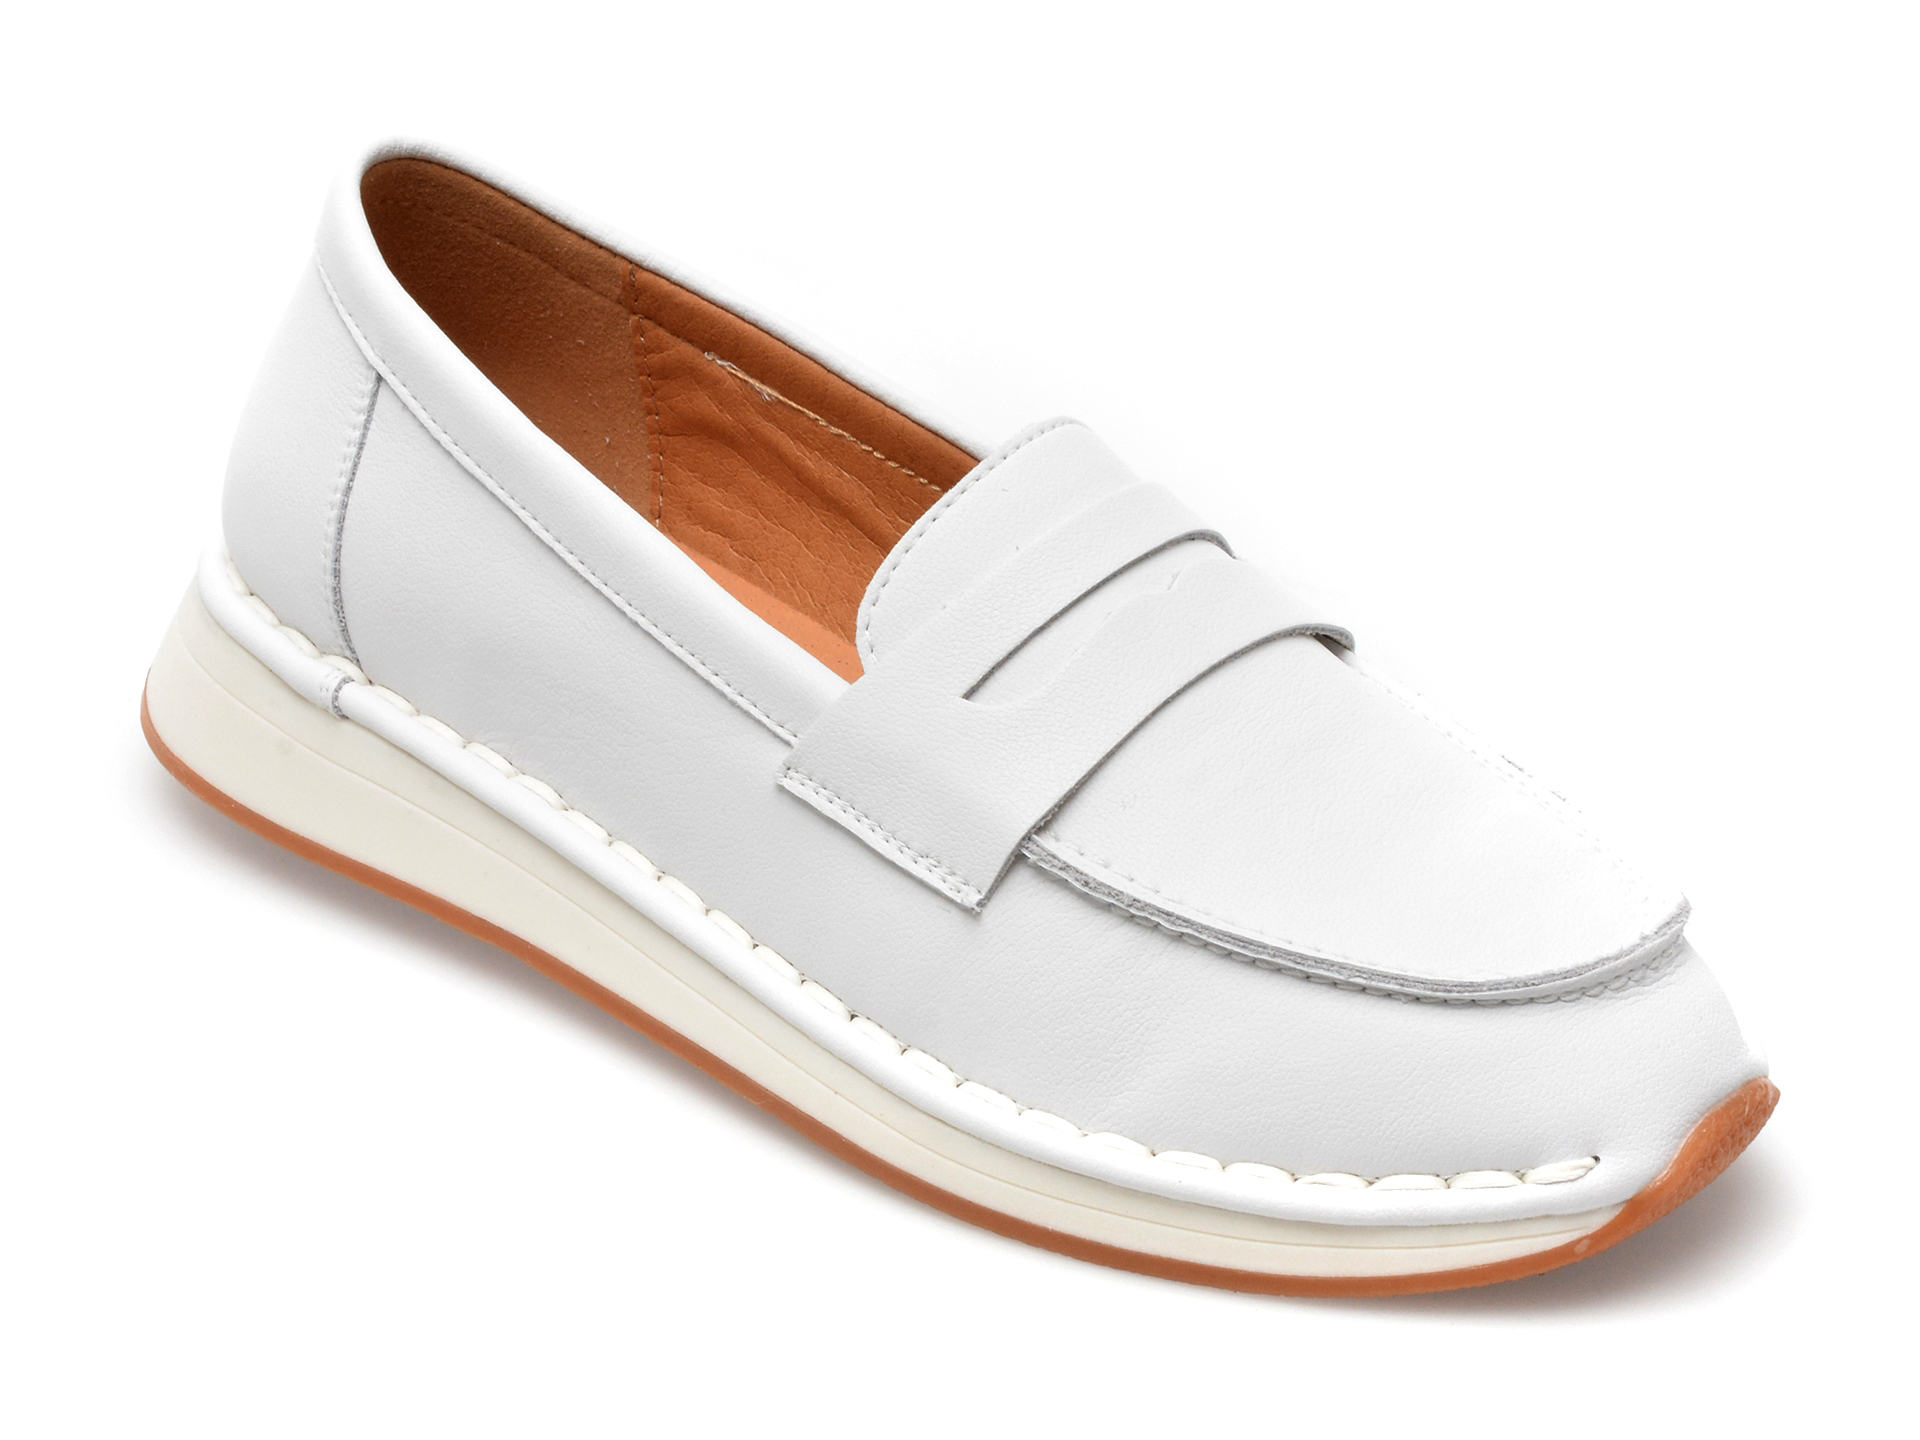 Pantofi FLAVIA PASSINI albi, A18251, din piele naturala